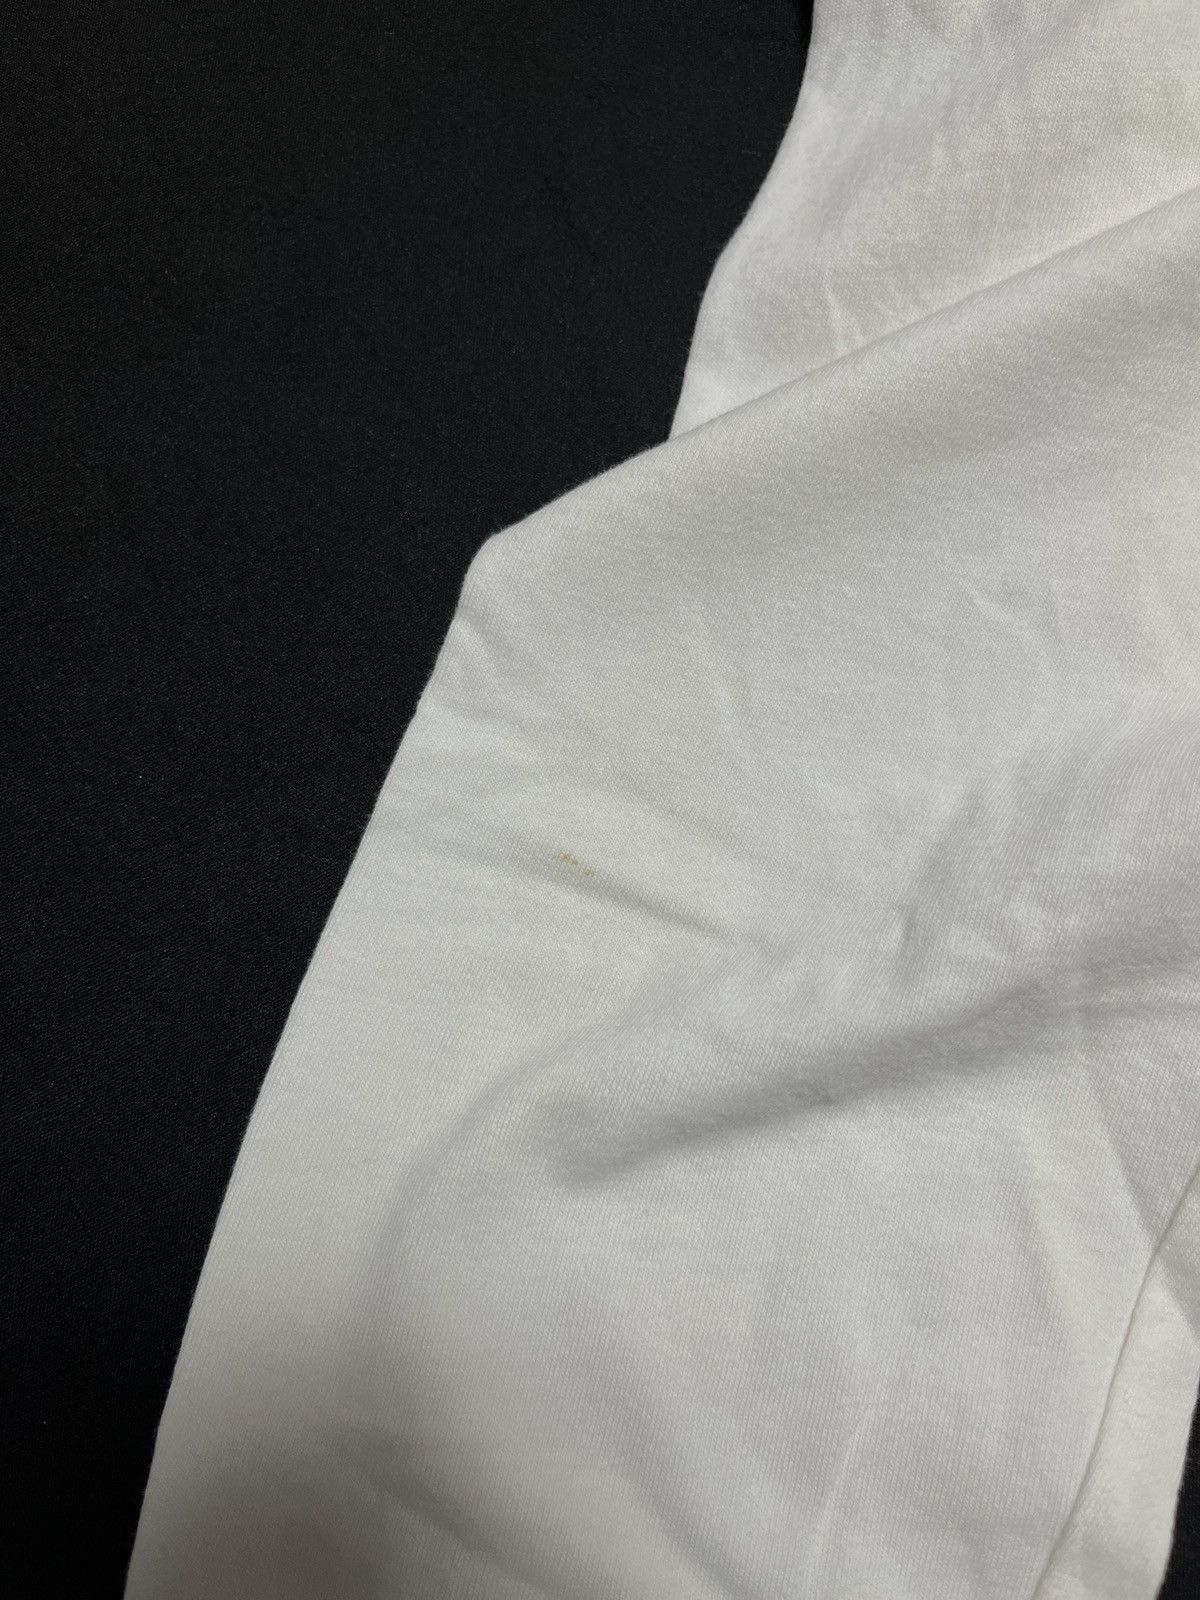 Vintage Nike Sportswear NSW Long Sleeves Shirt White Medium - 9